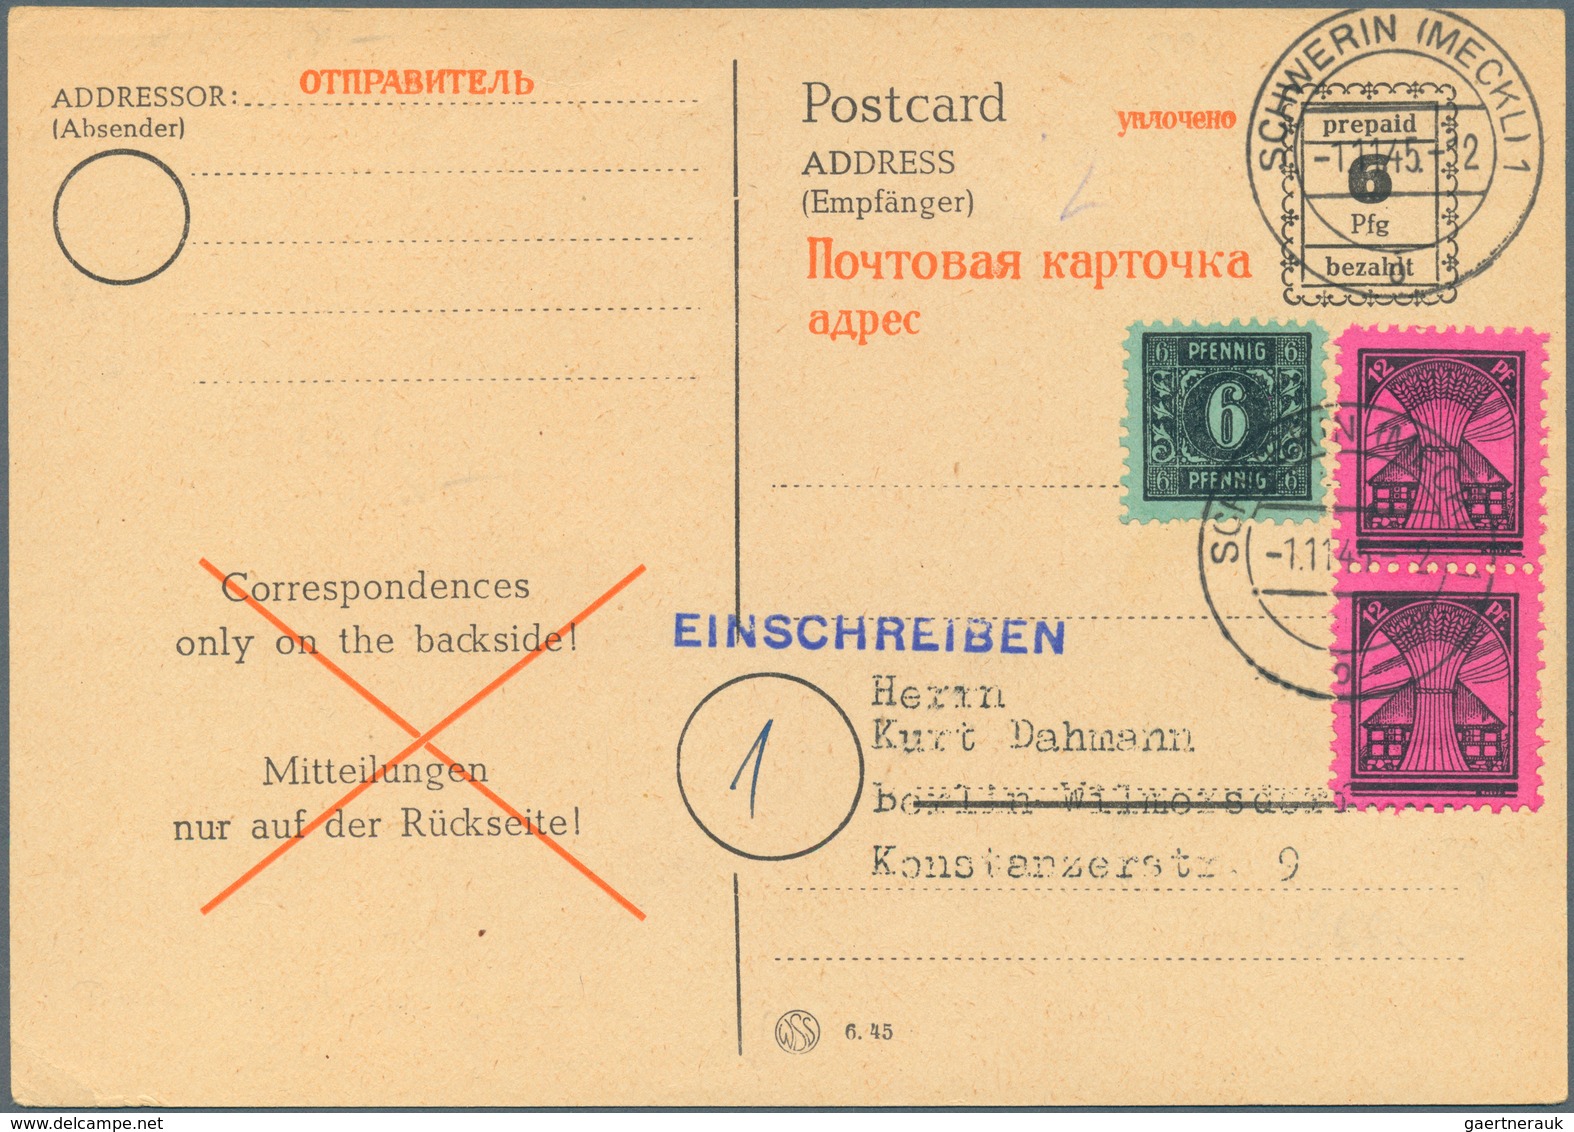 Alliierte Besetzung - Ganzsachen: 1945/1950. Sammlung von 46 Postkarten, gebraucht und ungebraucht.